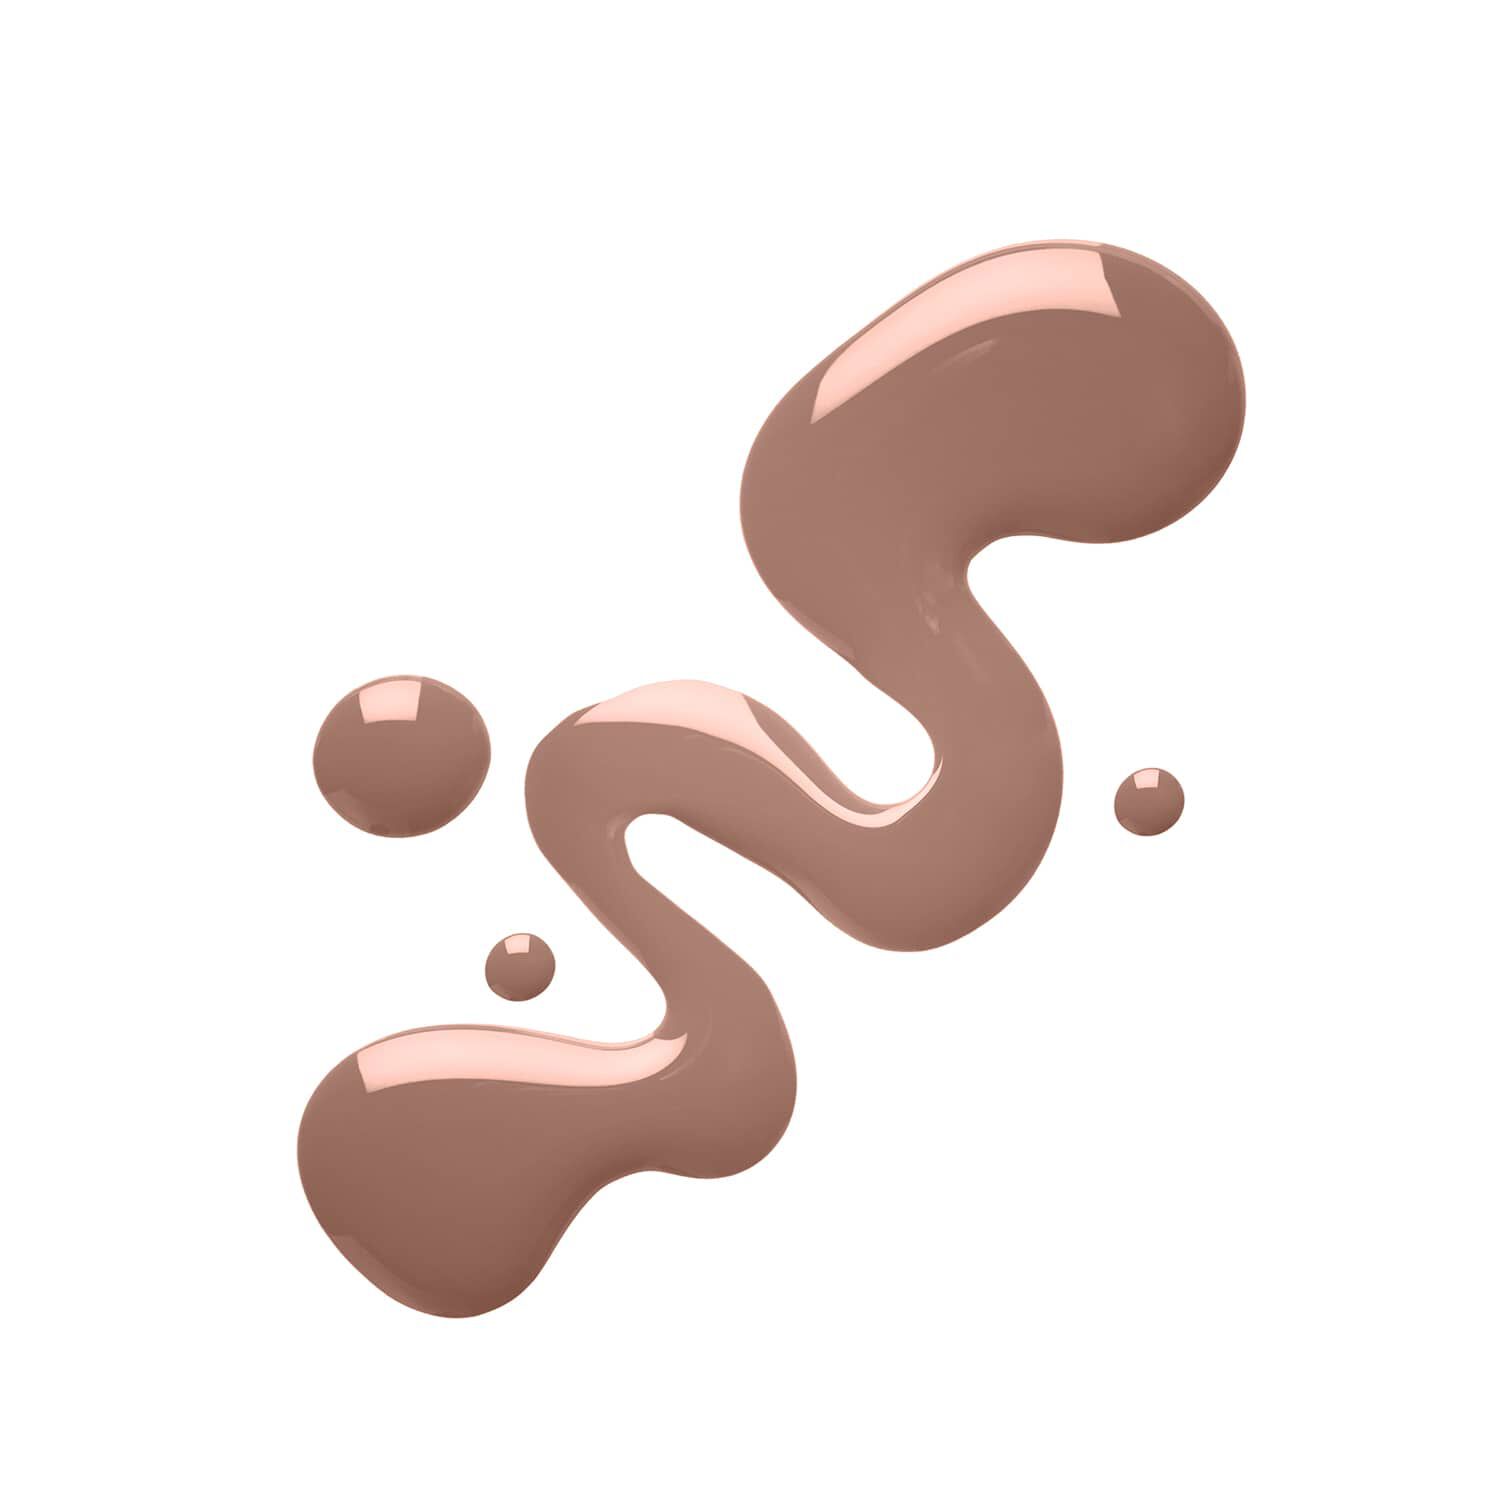 Ultra Airbrush Foundation Shade 10 - Chocolate 0.25 oz Image - 51